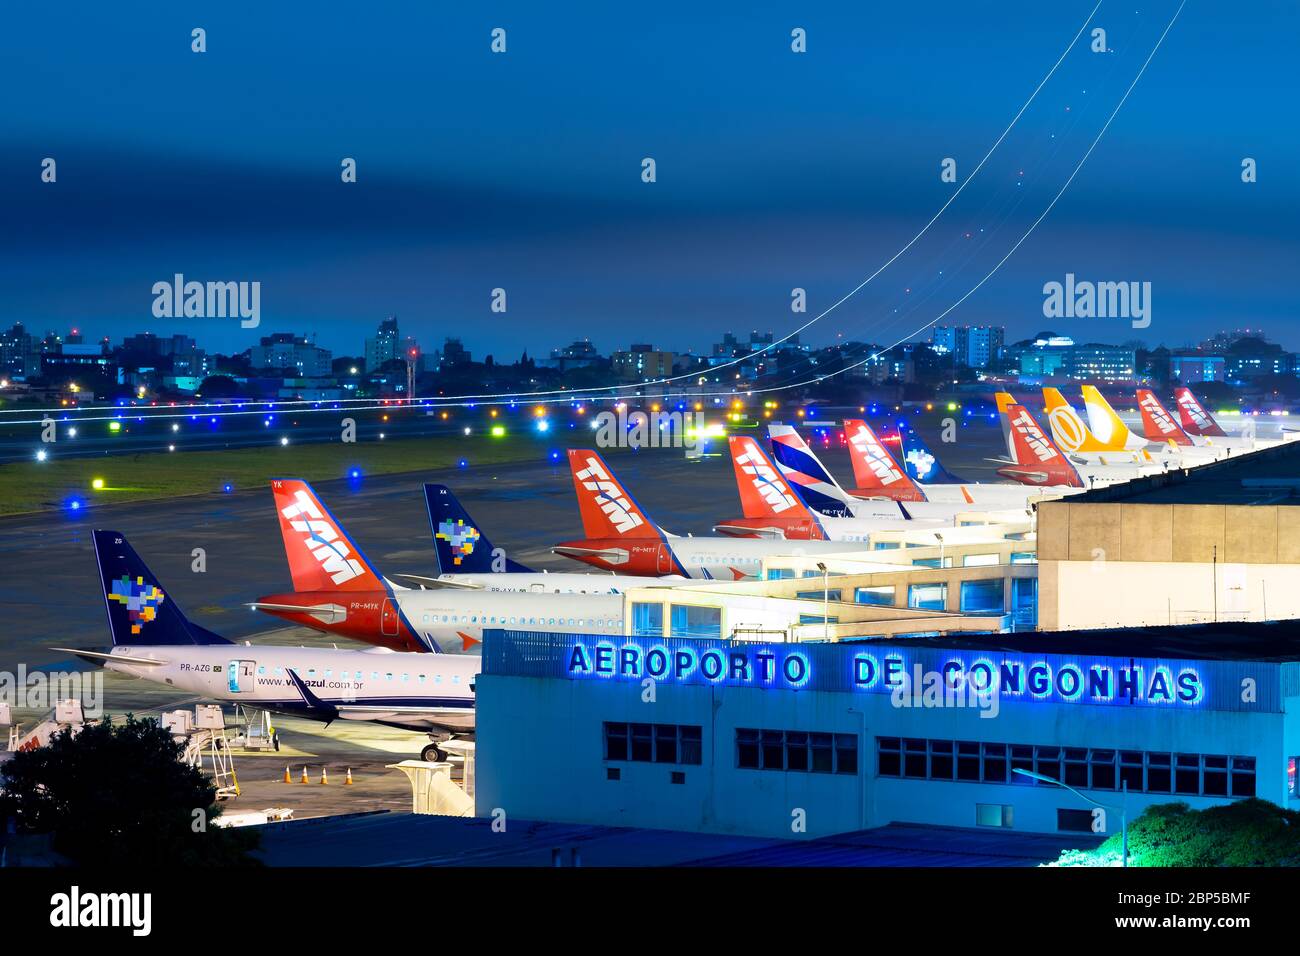 Aeroporto Congonhas di San Paolo che mostra più compagnie aeree brasiliane come Azul, LATAM e Gol Aircraft. Trafficato terminal dell'aeroporto nazionale di notte in Brasile. Foto Stock